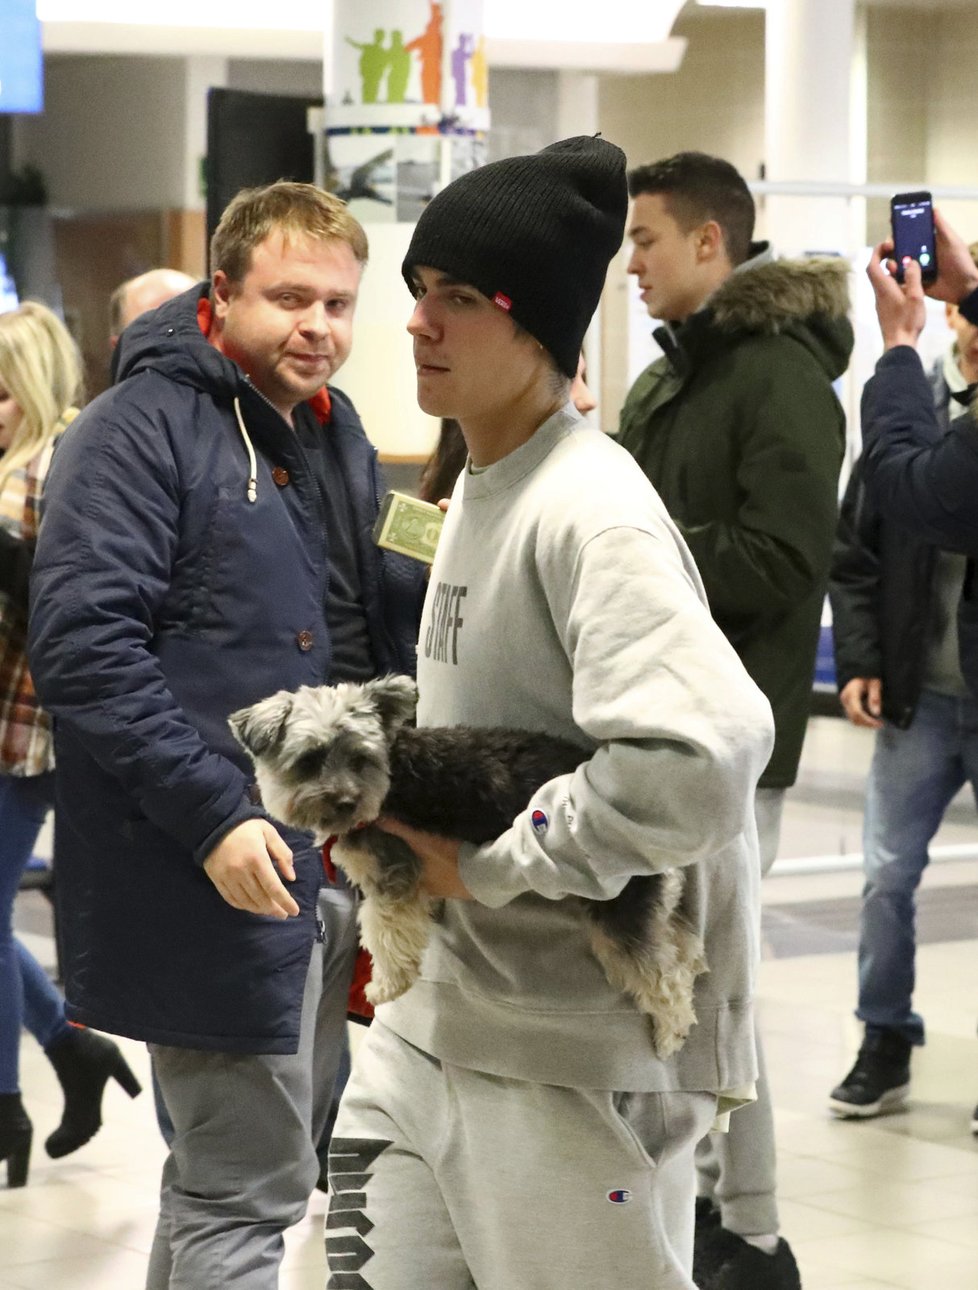 Justin si s sebou do Prahy přivezl i psího kamaráda